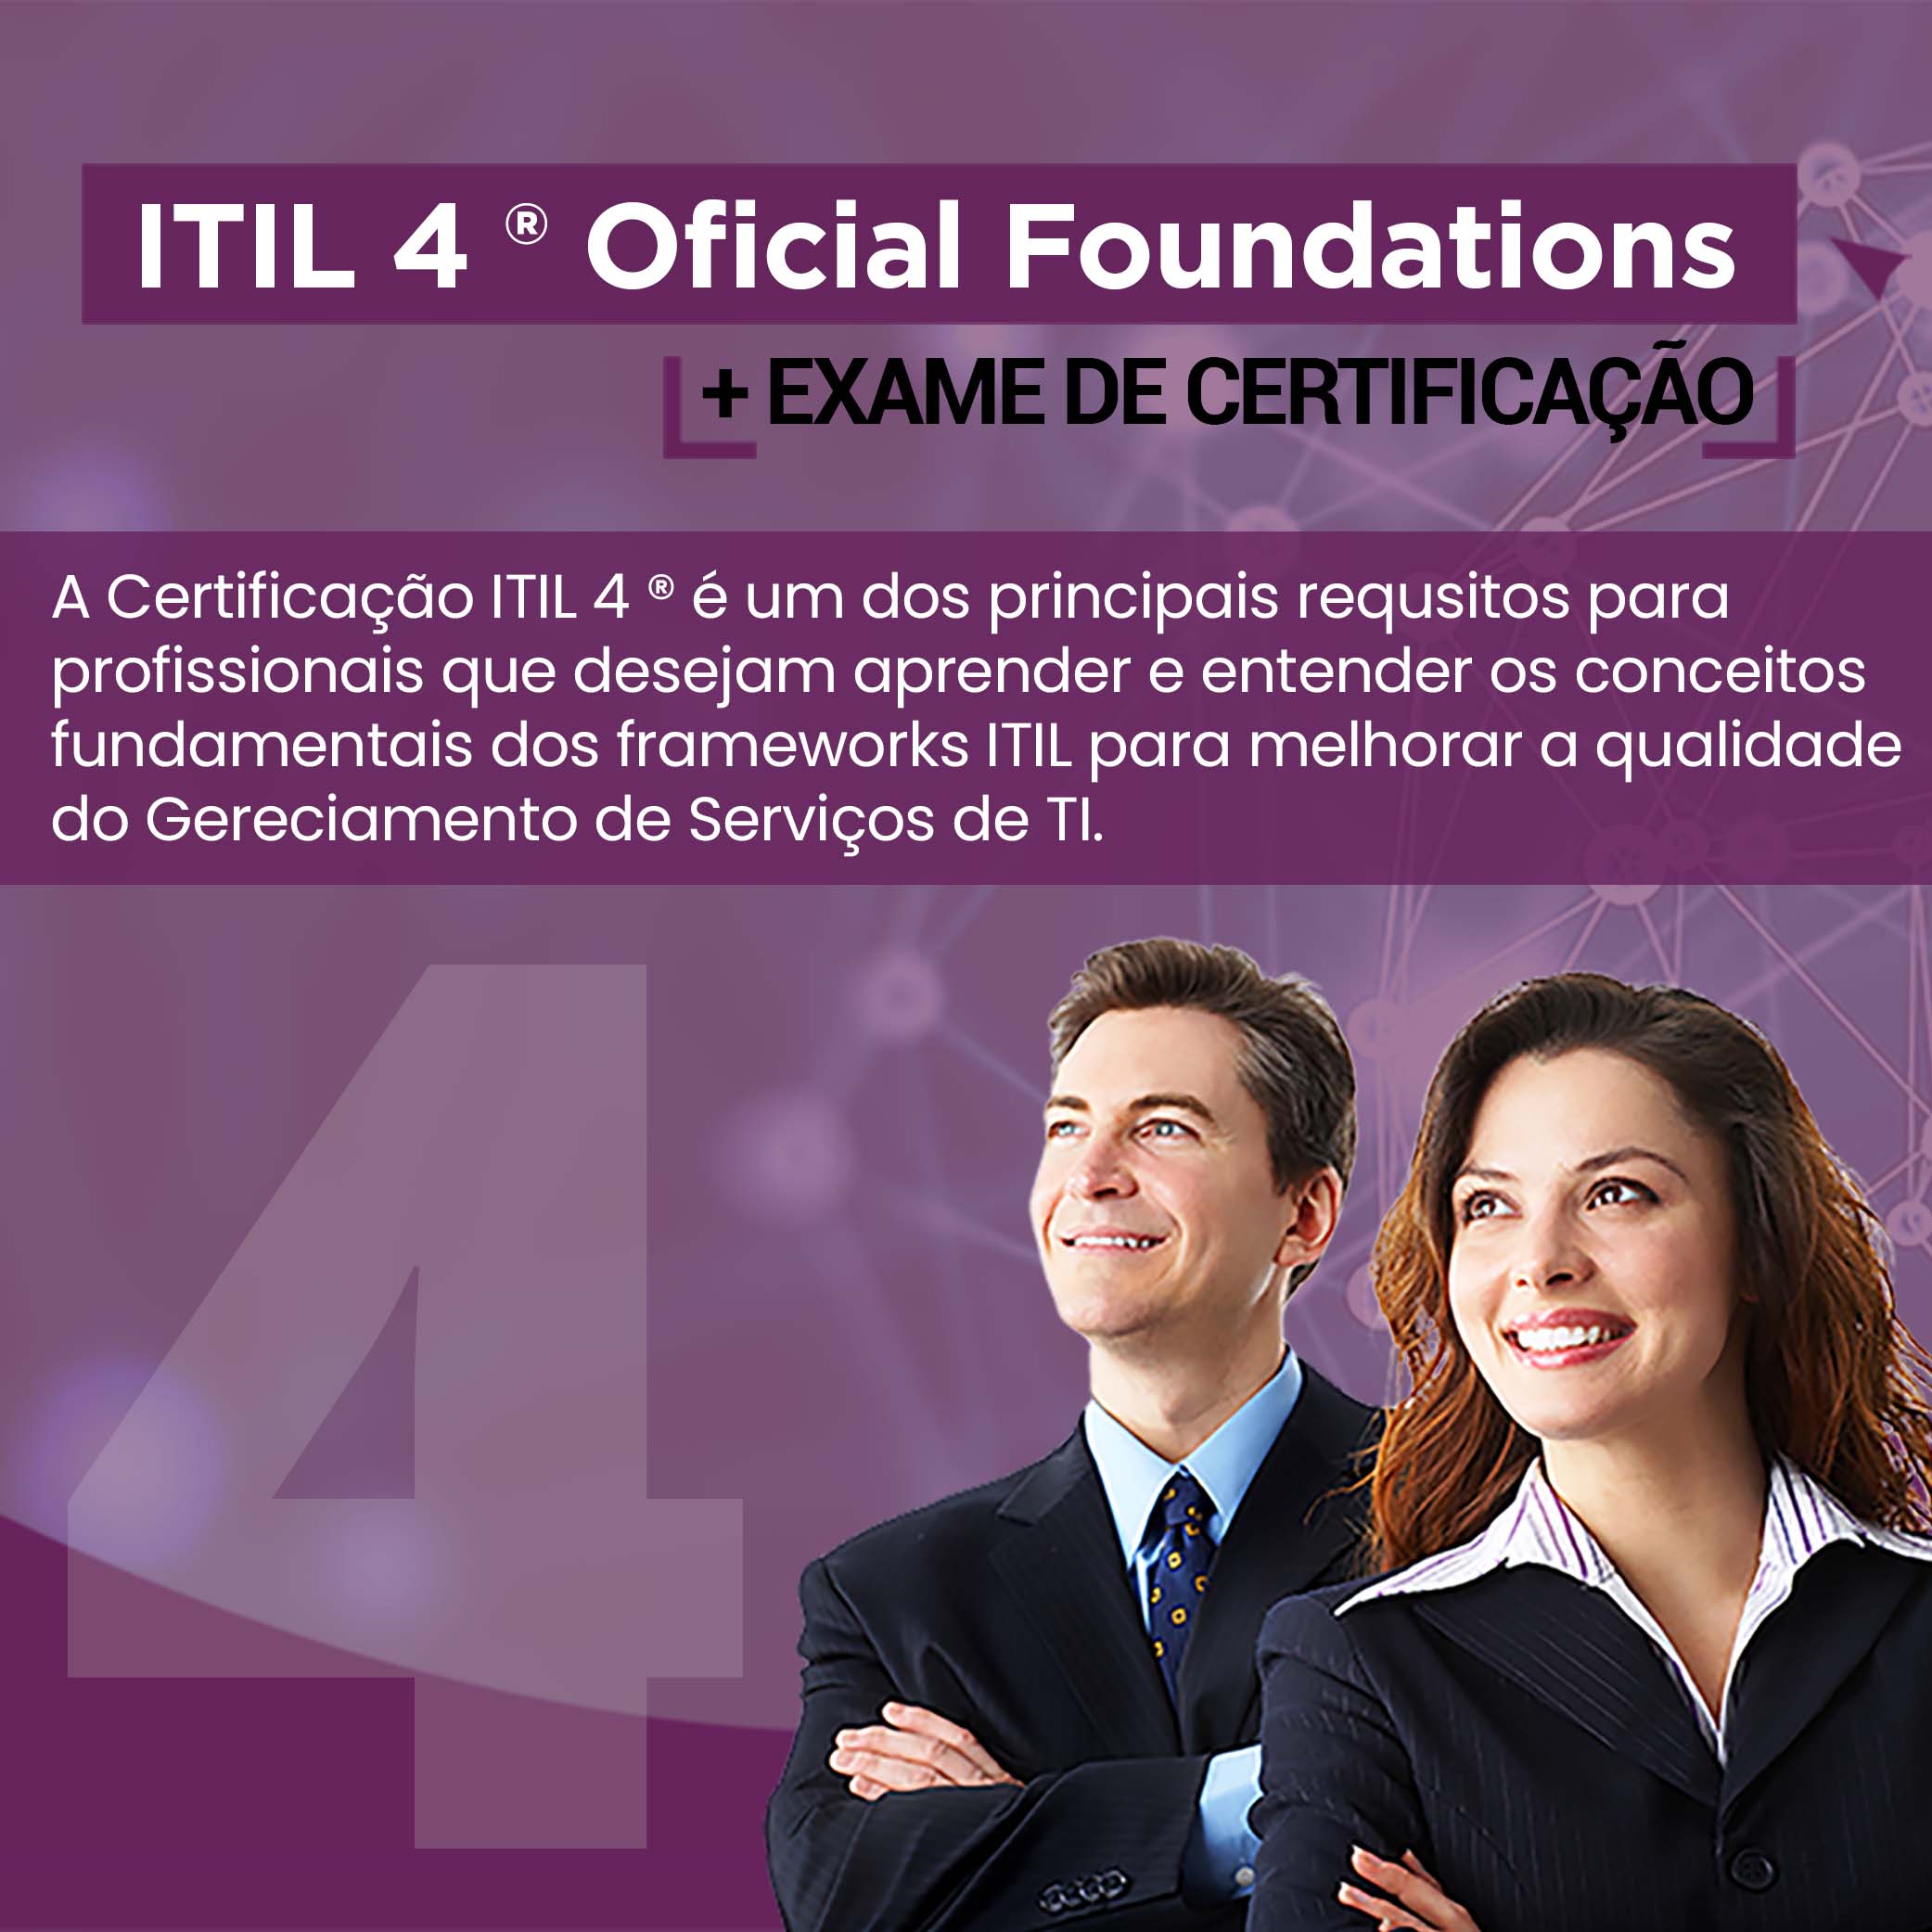 Itil 4º - Tecnologia da informação, Infraestrutura e organização de dados